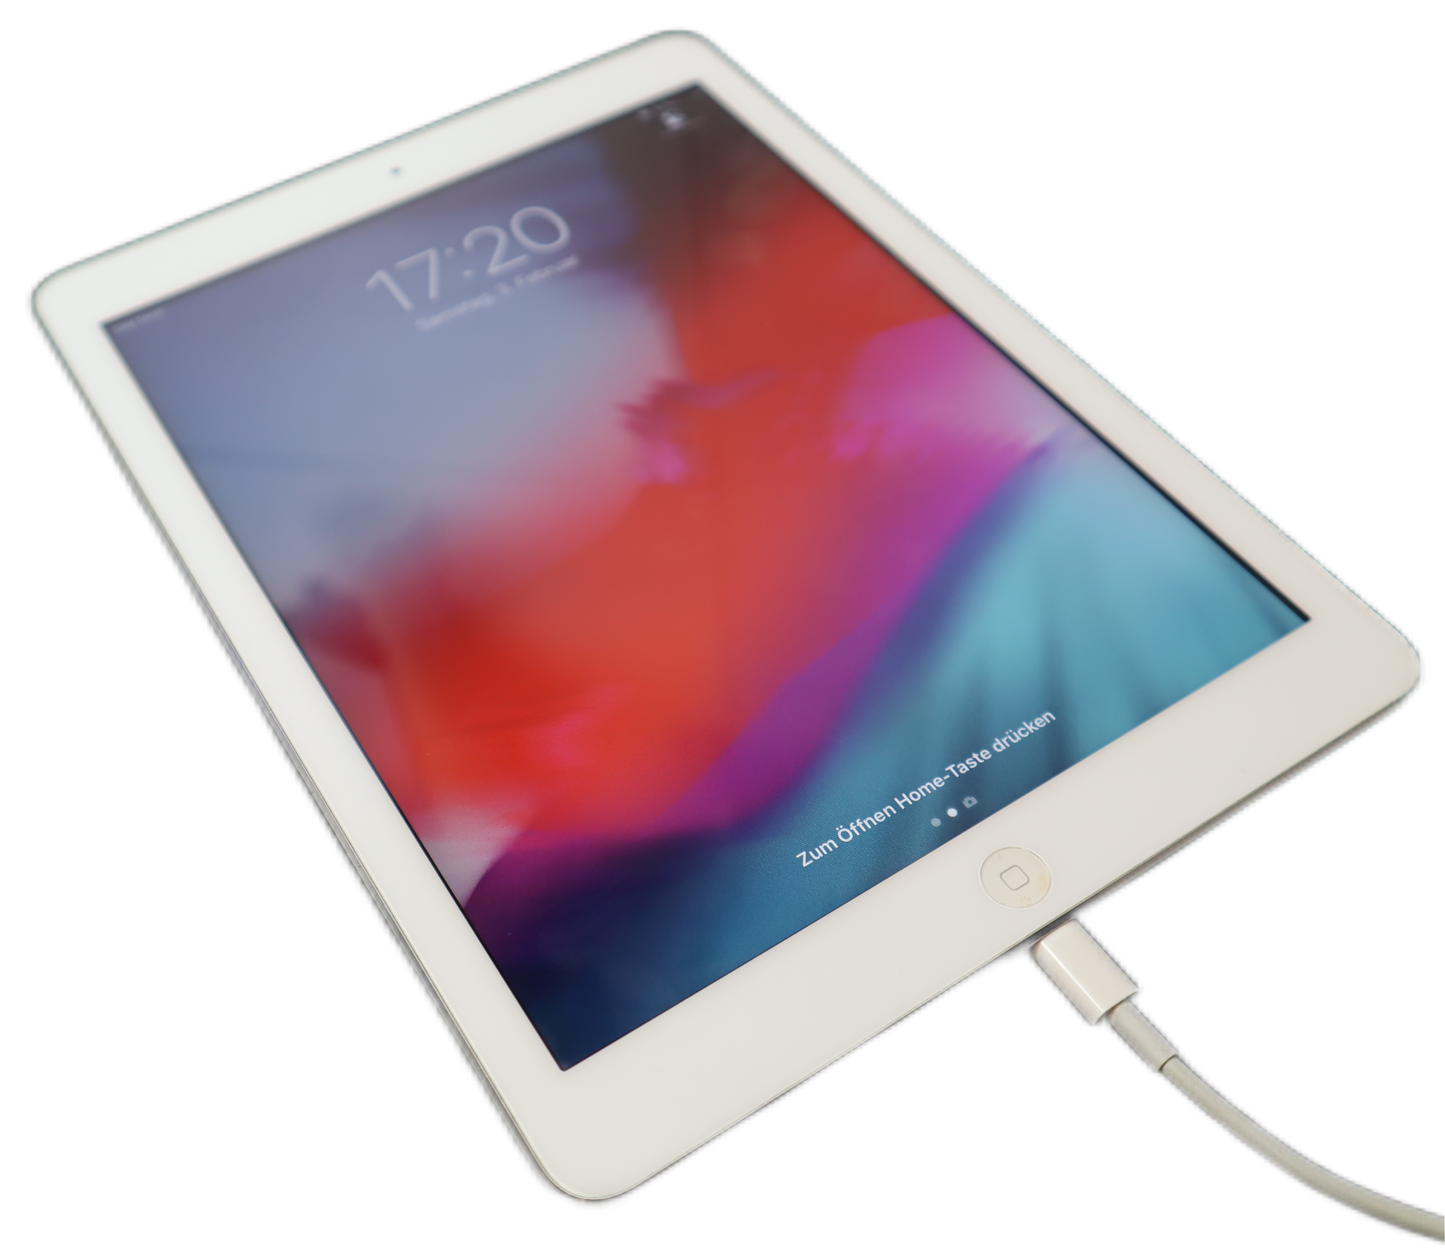 Apple iPad Air 1st Gen 9,7 Zoll 32 GB LTE 4G IOS 12.5.7 ( A1475 ) OHNE GEWÄHRLEISTUNG ODER RÜCKNAHME